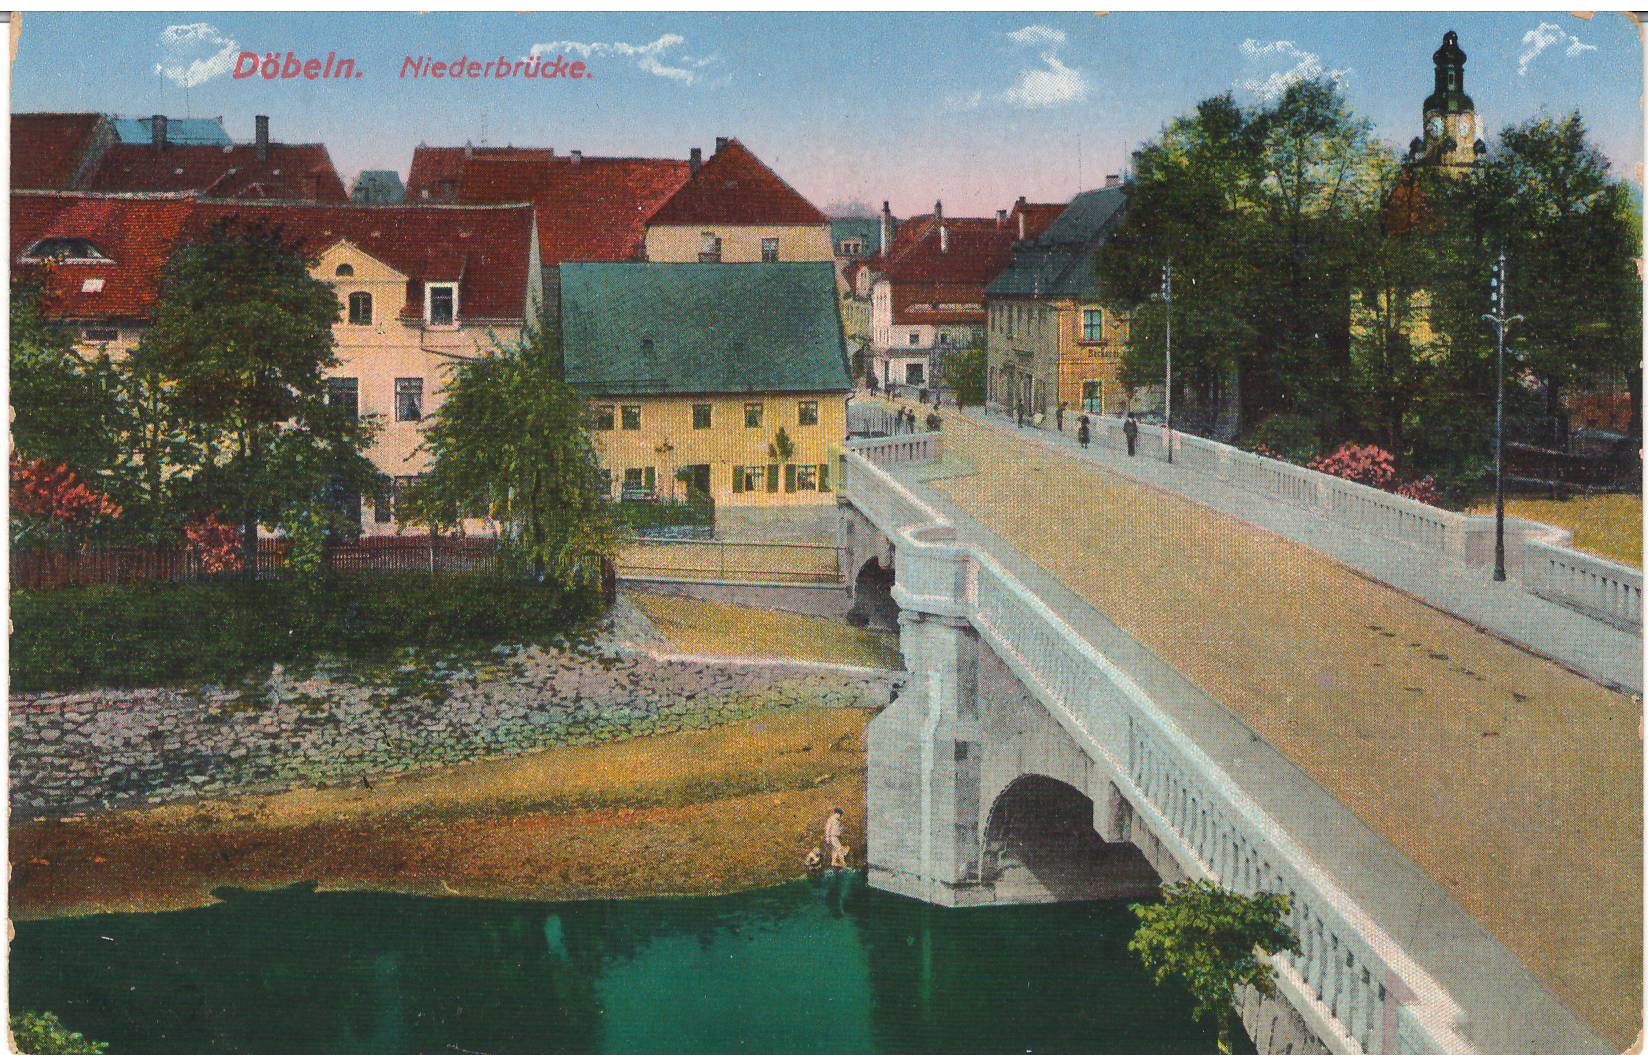 Ansichtspostkarte Döbeln: Niederbrücke (Stadtmuseum / Kleine Galerie Döbeln CC BY-NC-SA)